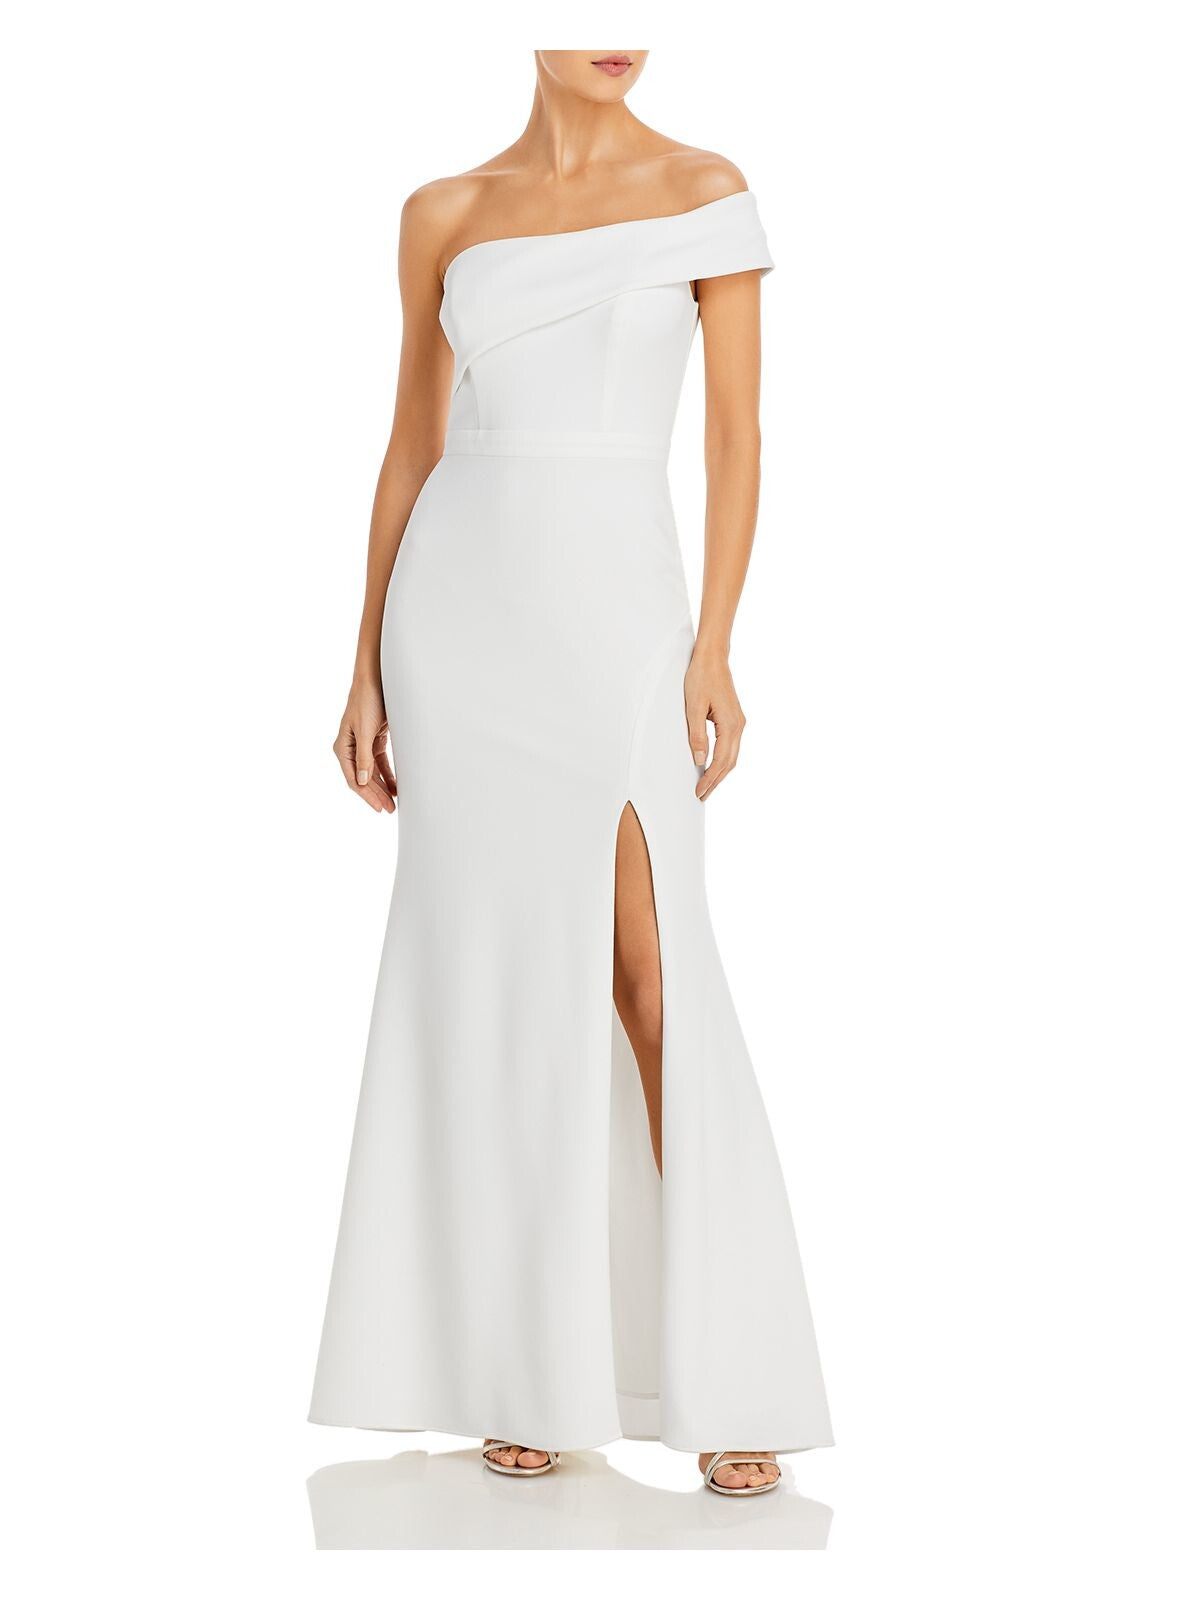 AQUA Womens White Zippered Slitted One Shoulder Sleeve Padded Sleeveless Asymmetrical Neckline Full-Length Evening Gown Dress 8